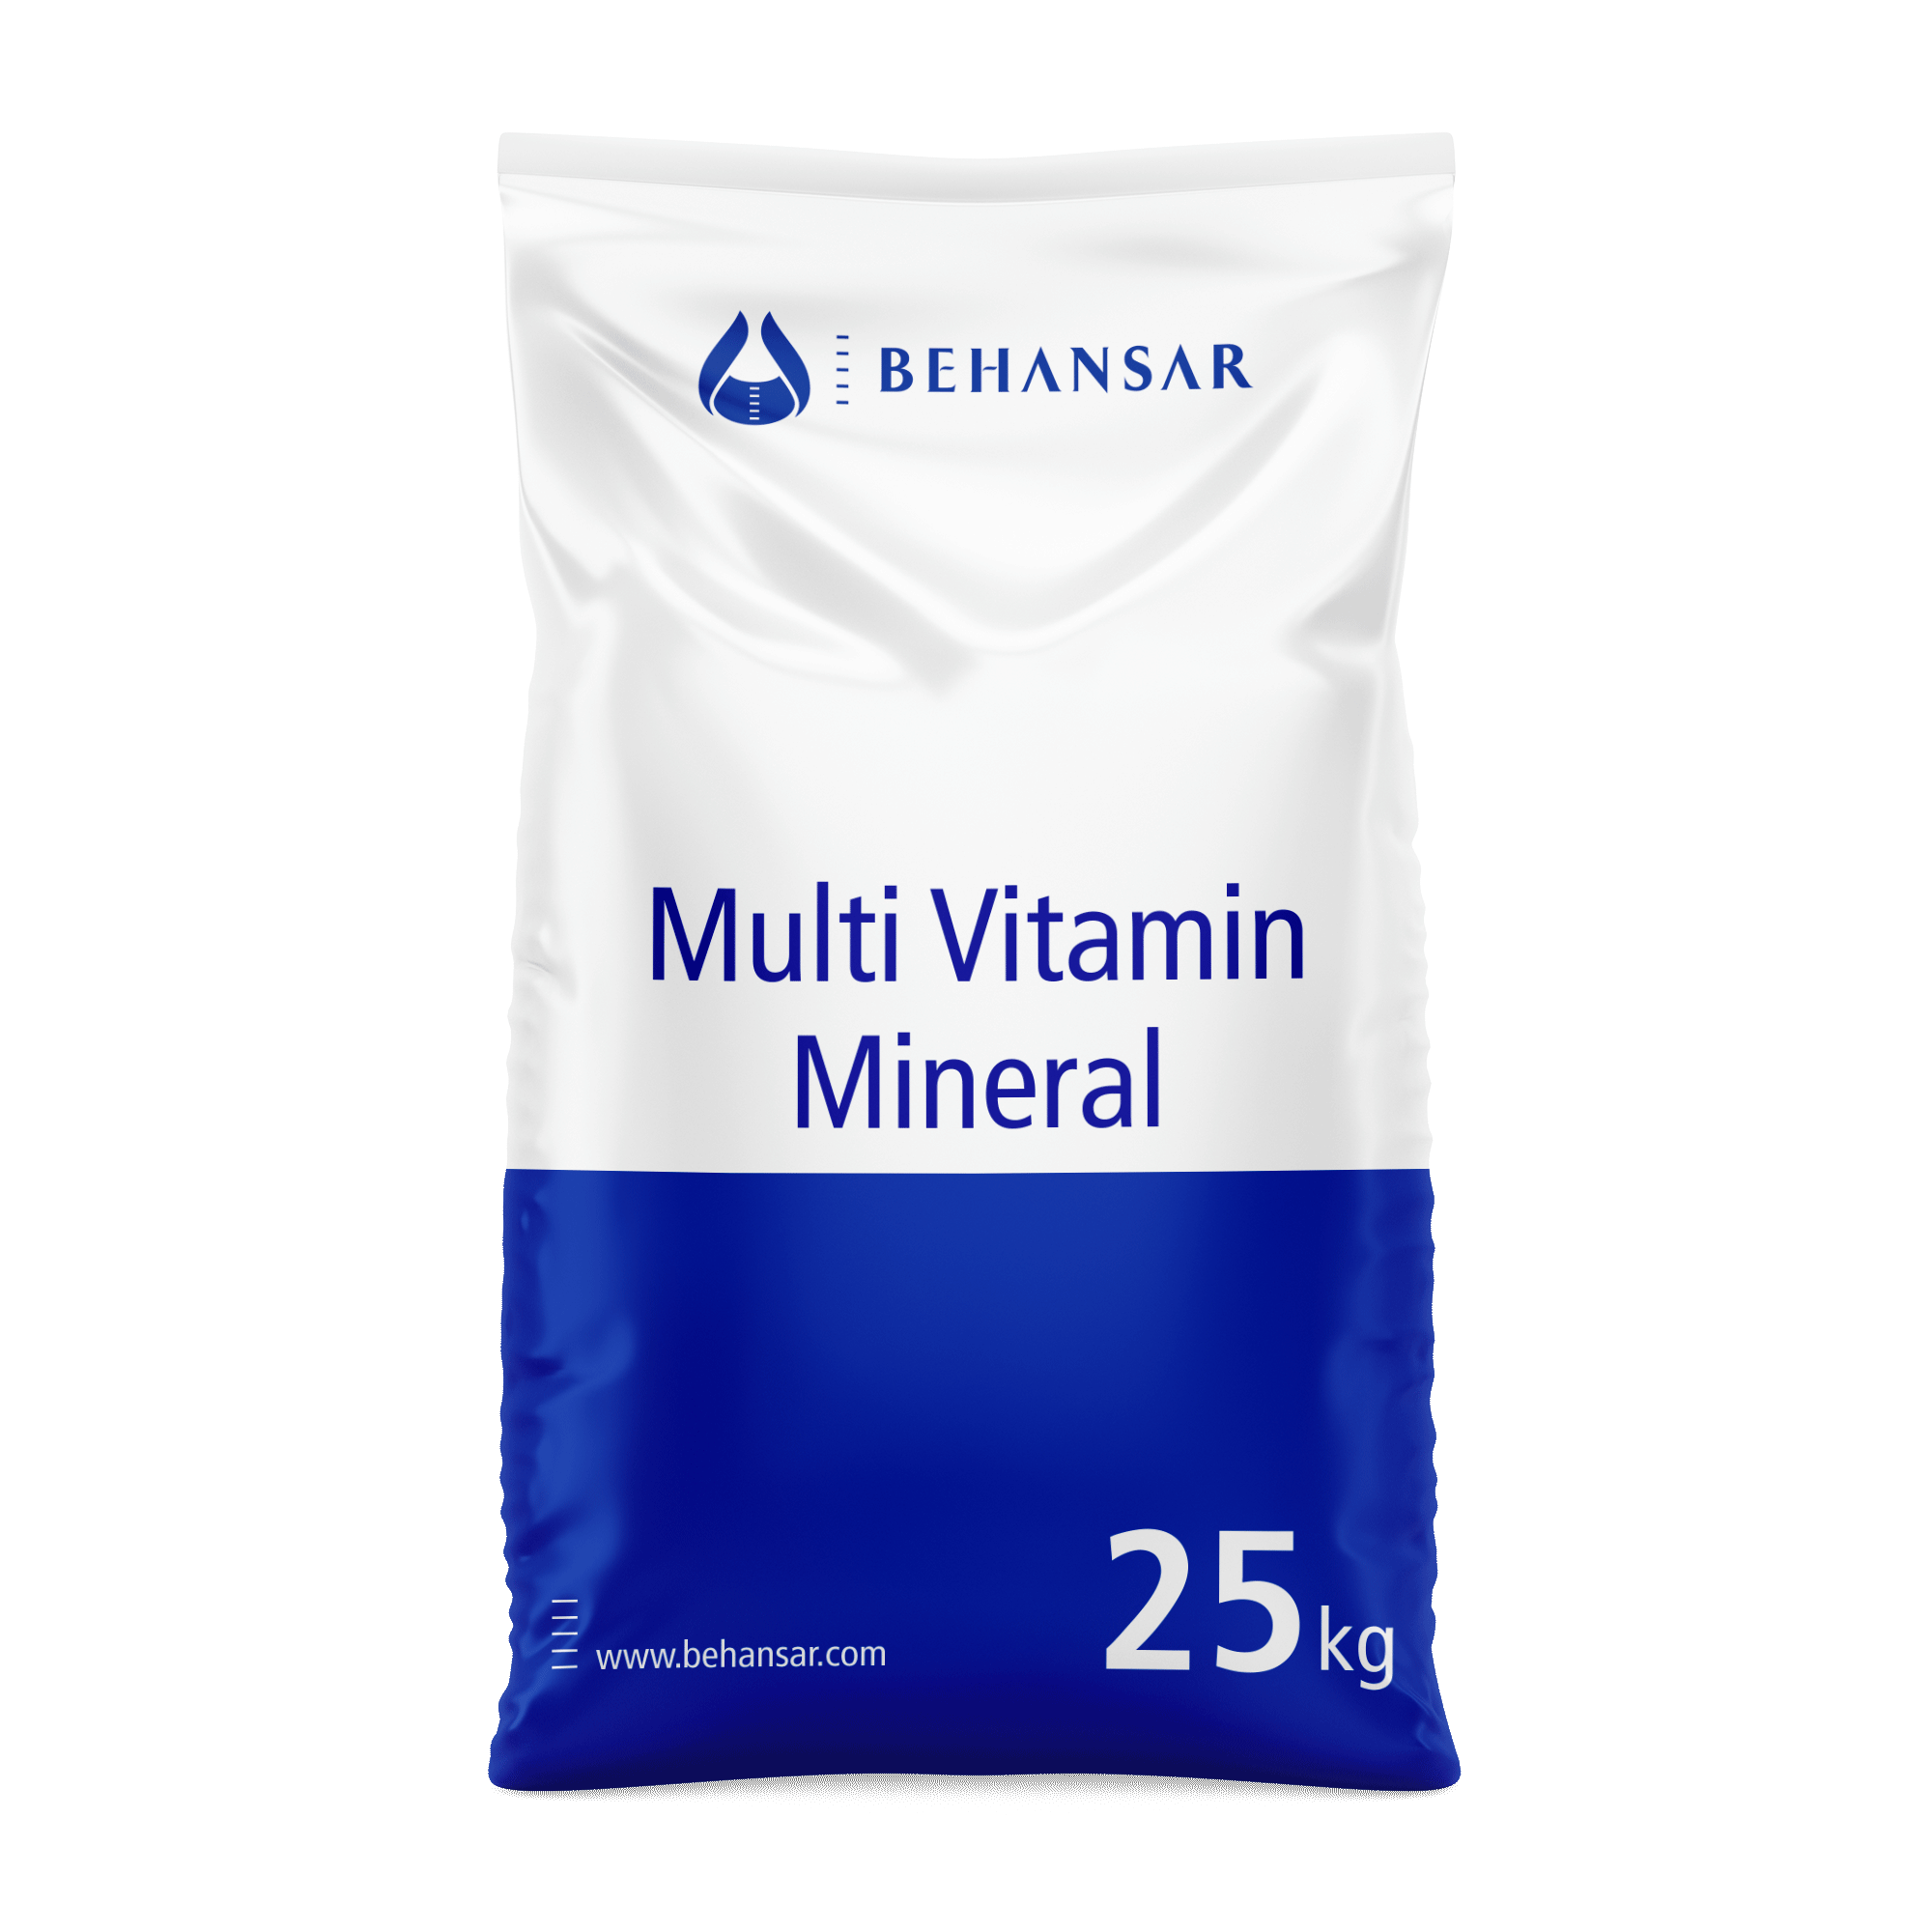 مولتی ویتامین مینرال یکی از تولیدات شرکت بهانسار است